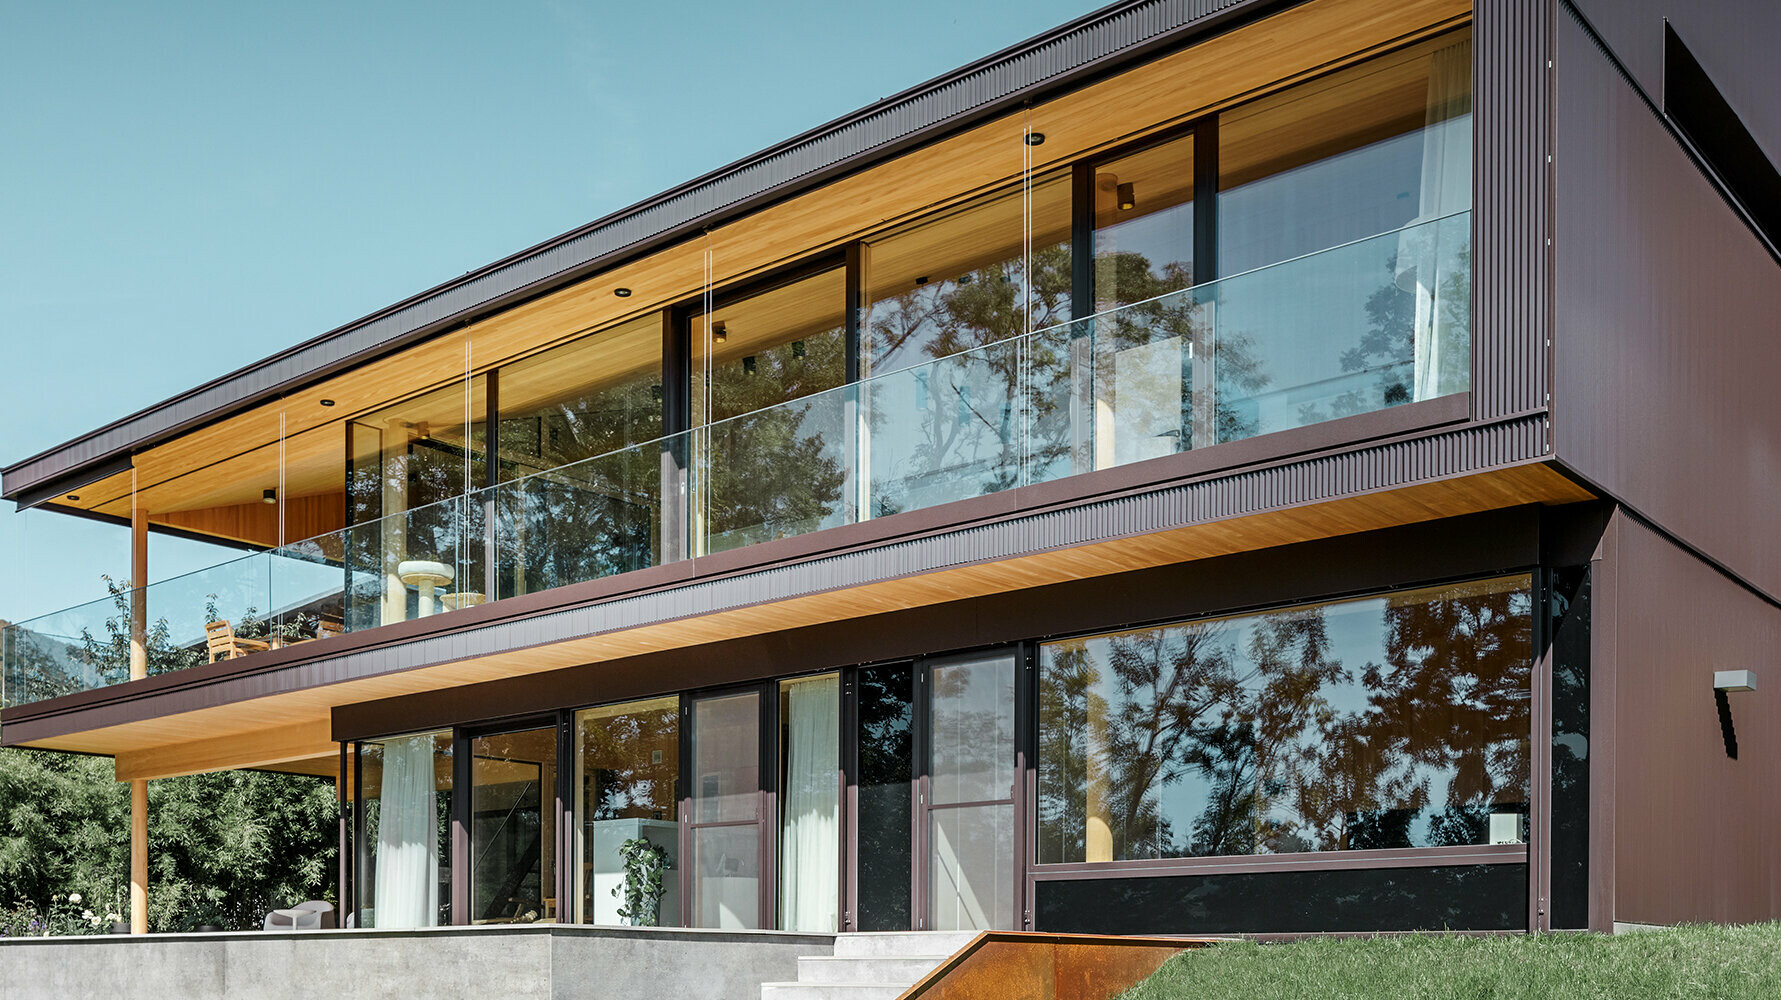 Neues Einfamilienhaus mit großen Glasflächen und brauner Aluminium Fassade